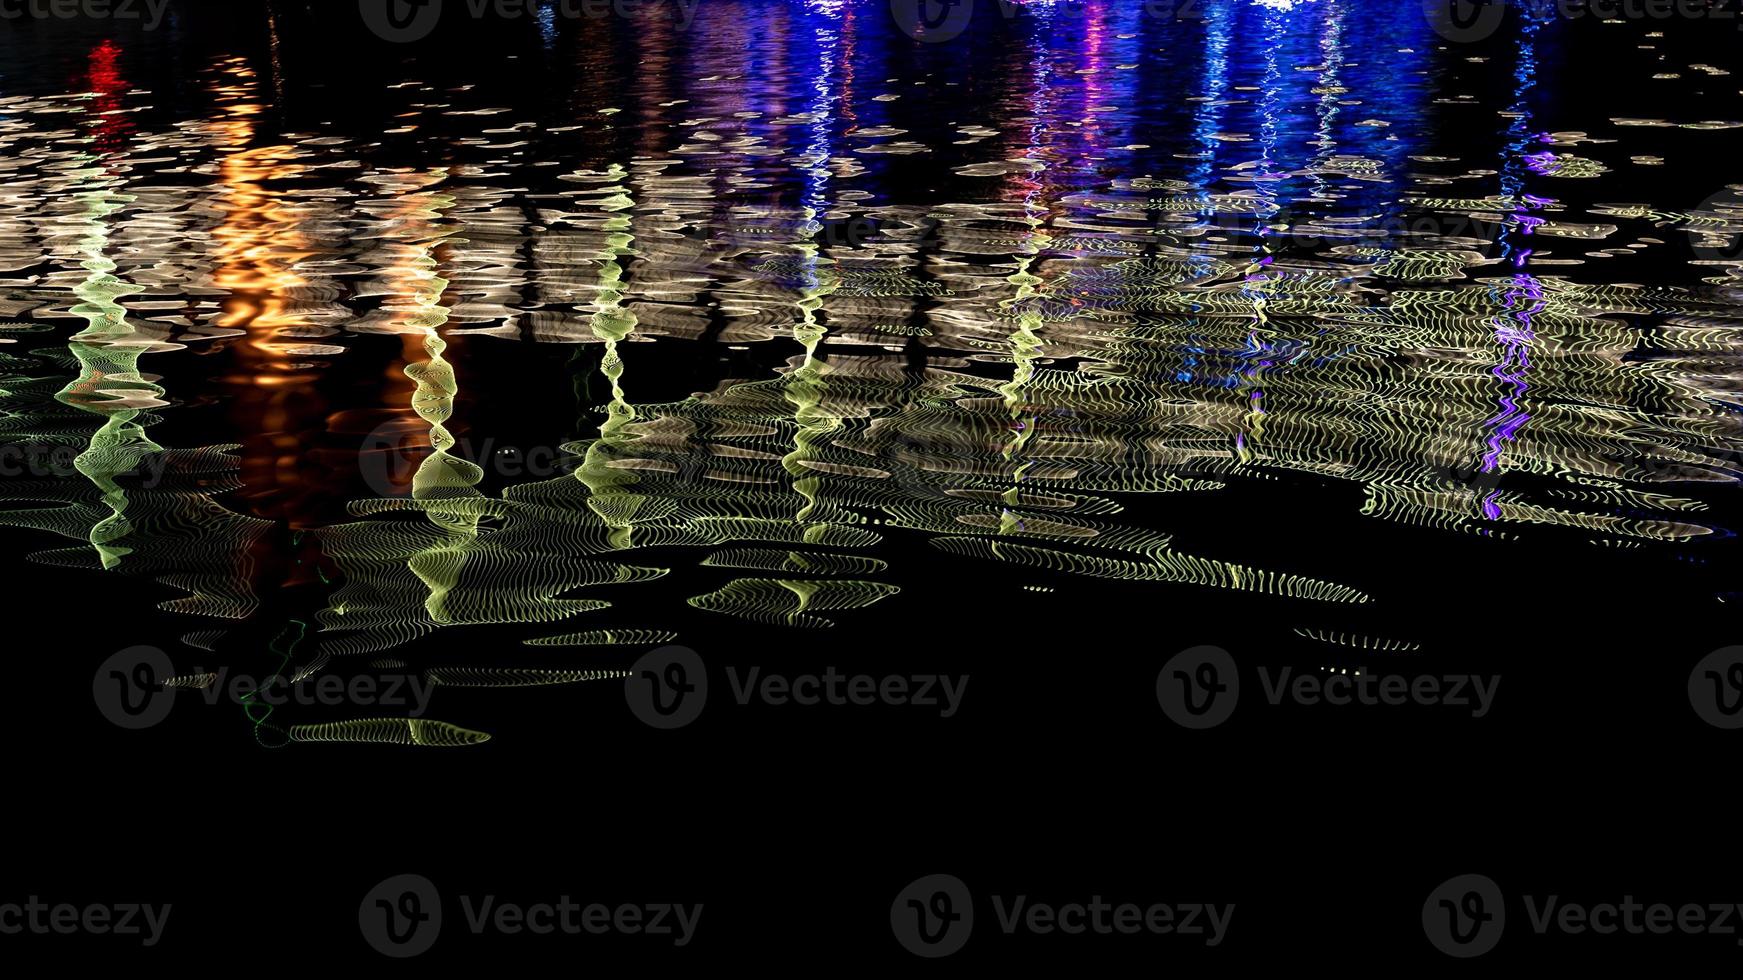 à noite, o riacho reflete as luzes coloridas na ponte foto